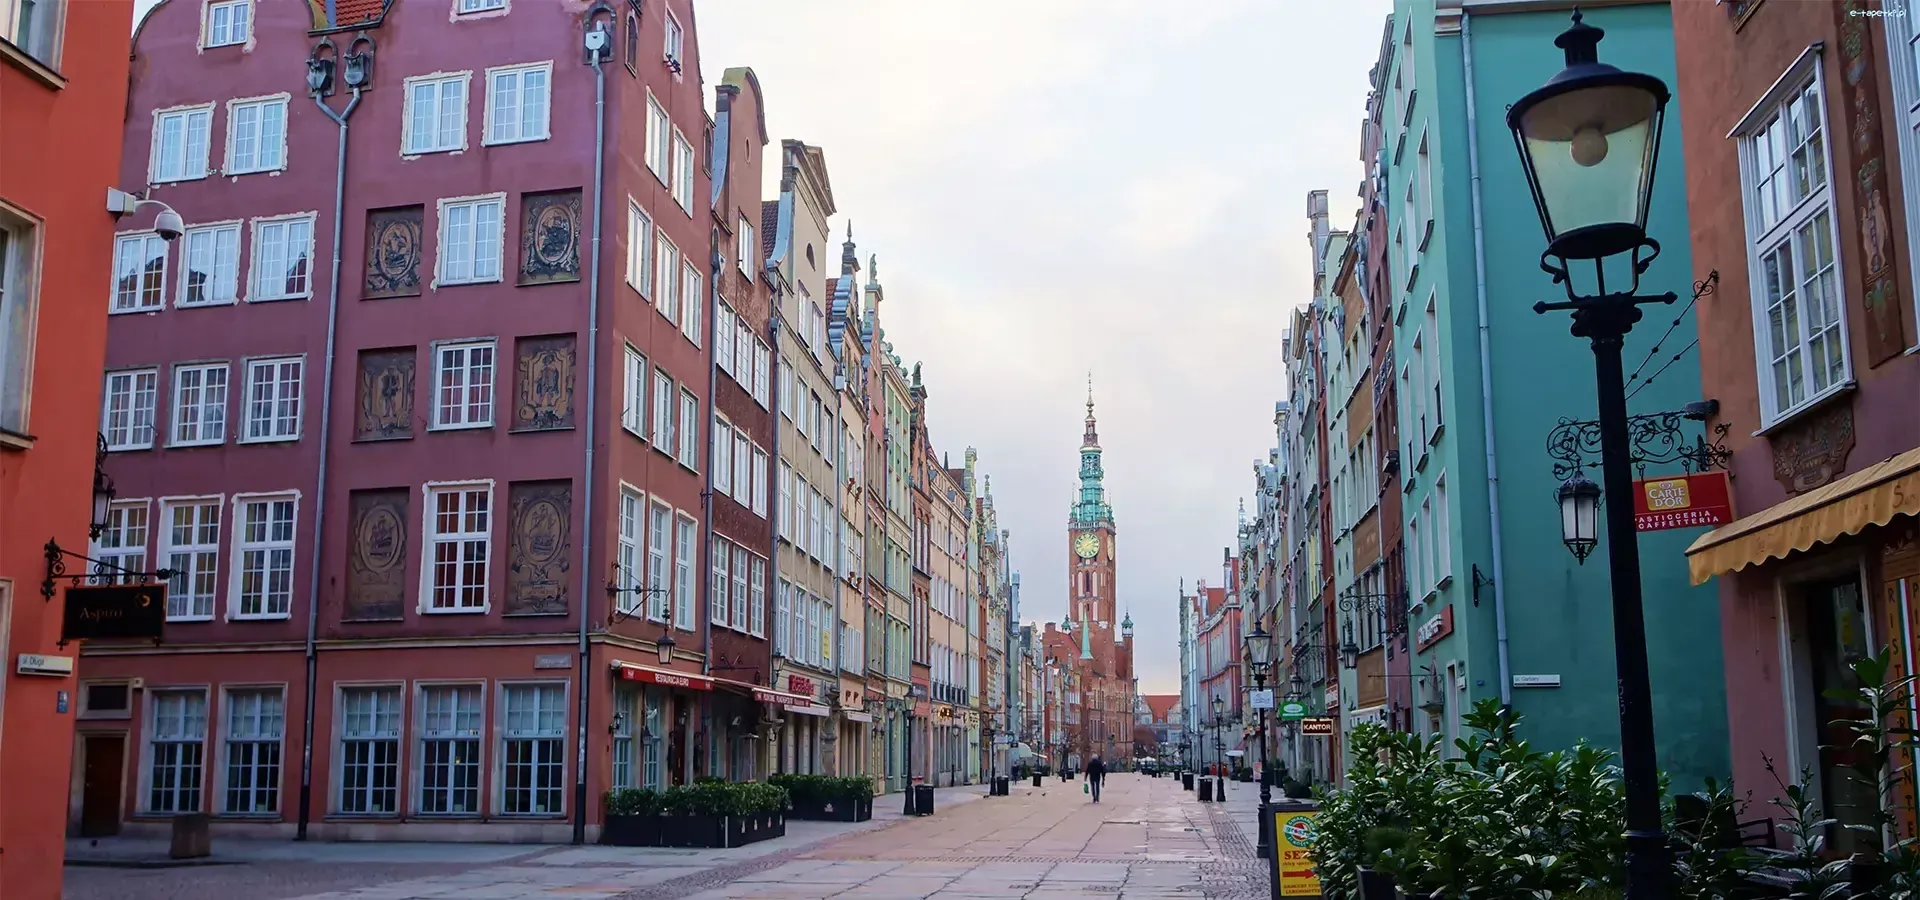 Old town Gdańsk